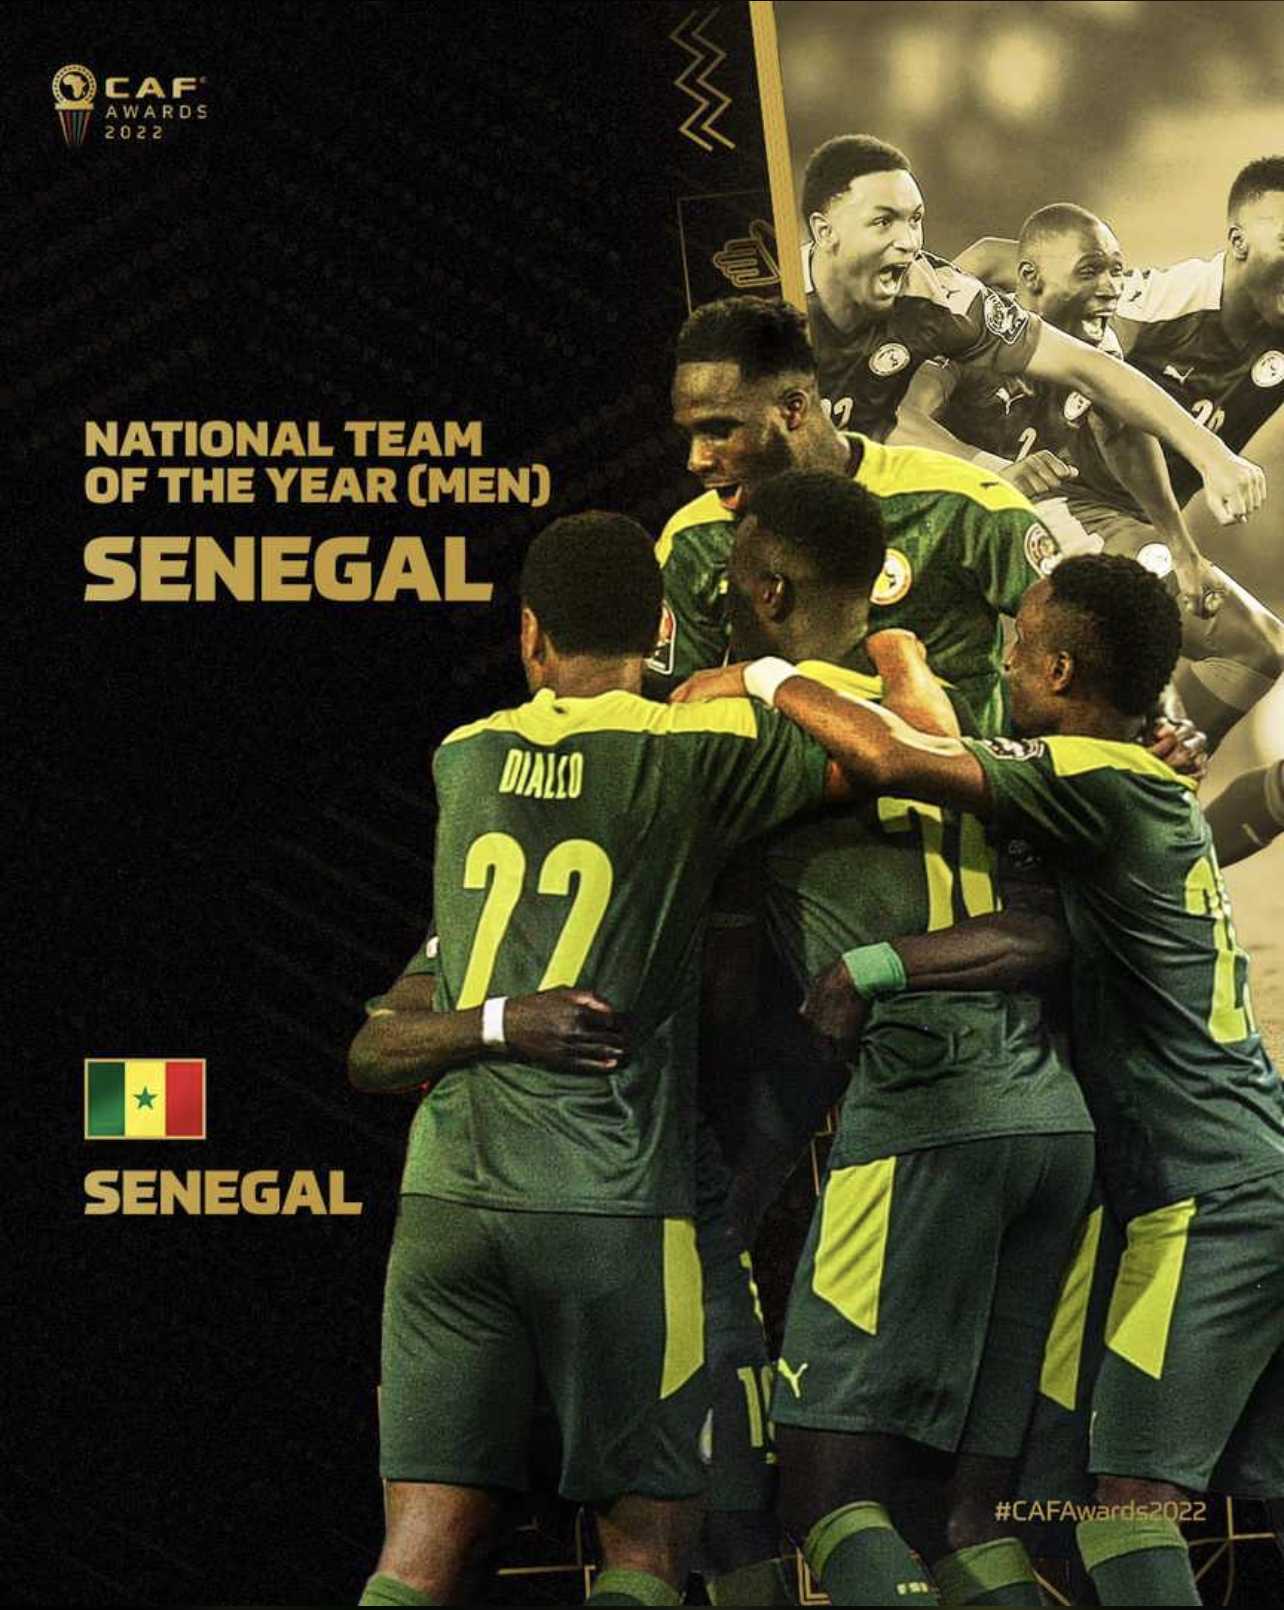 Le Sénégal est devenu le cinquième candidat et le septième pays à présenter une candidature pour l'organisation de la Coupe d'Afrique des Nations (CAN) en 2027. Le pays a officiellement déposé sa candidature lundi.